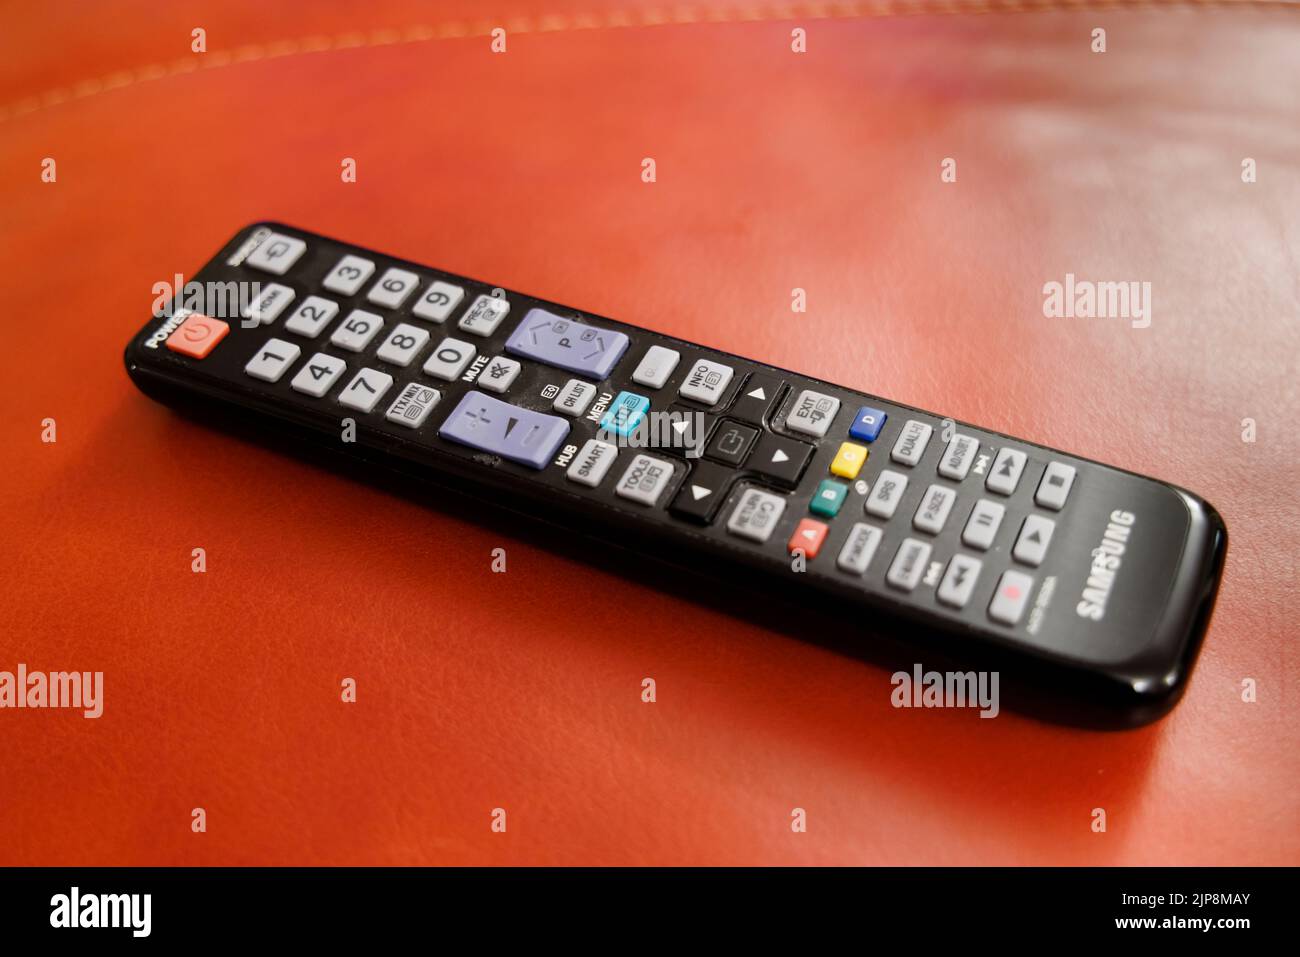 Ein gebrauchter schwarzer Samsung Fernseher Fernbedienung Hörer vor einem roten Hintergrund Stockfoto